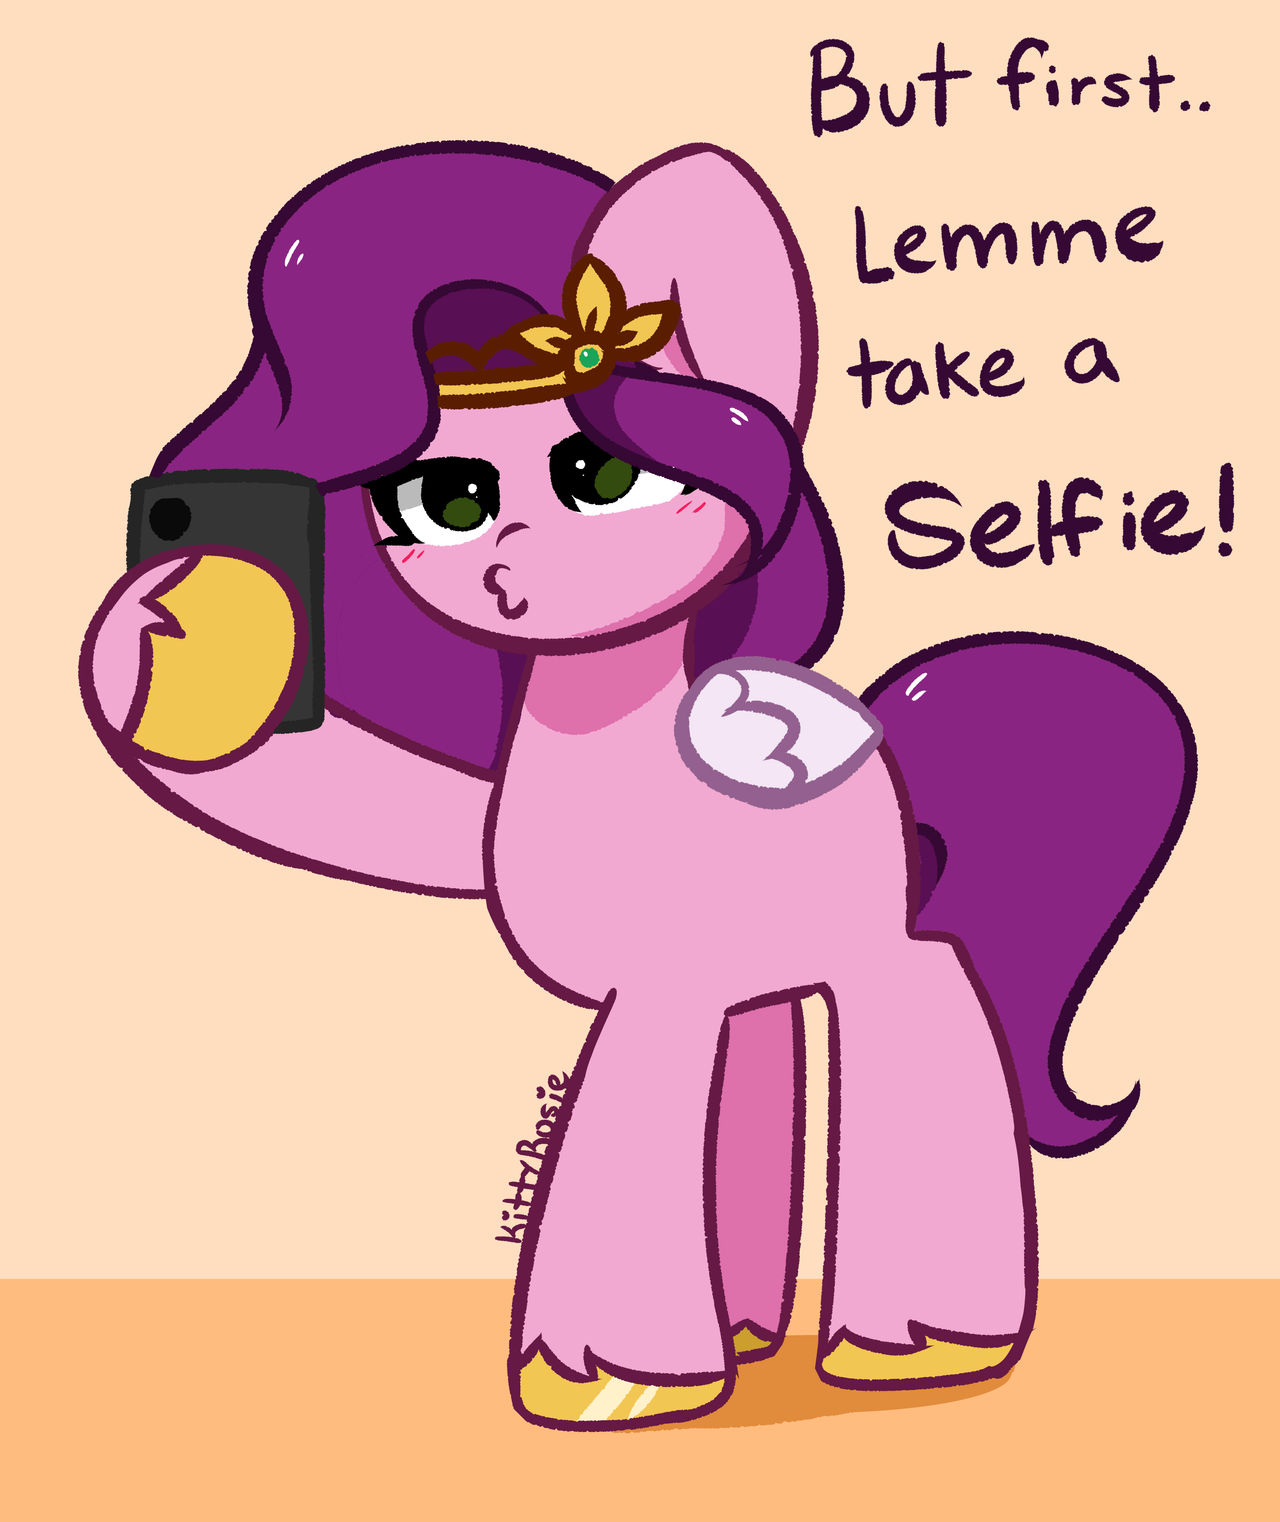 lemme_take_a_selfie_by_itskittyrosie_dfj35jd-fullview.jpg